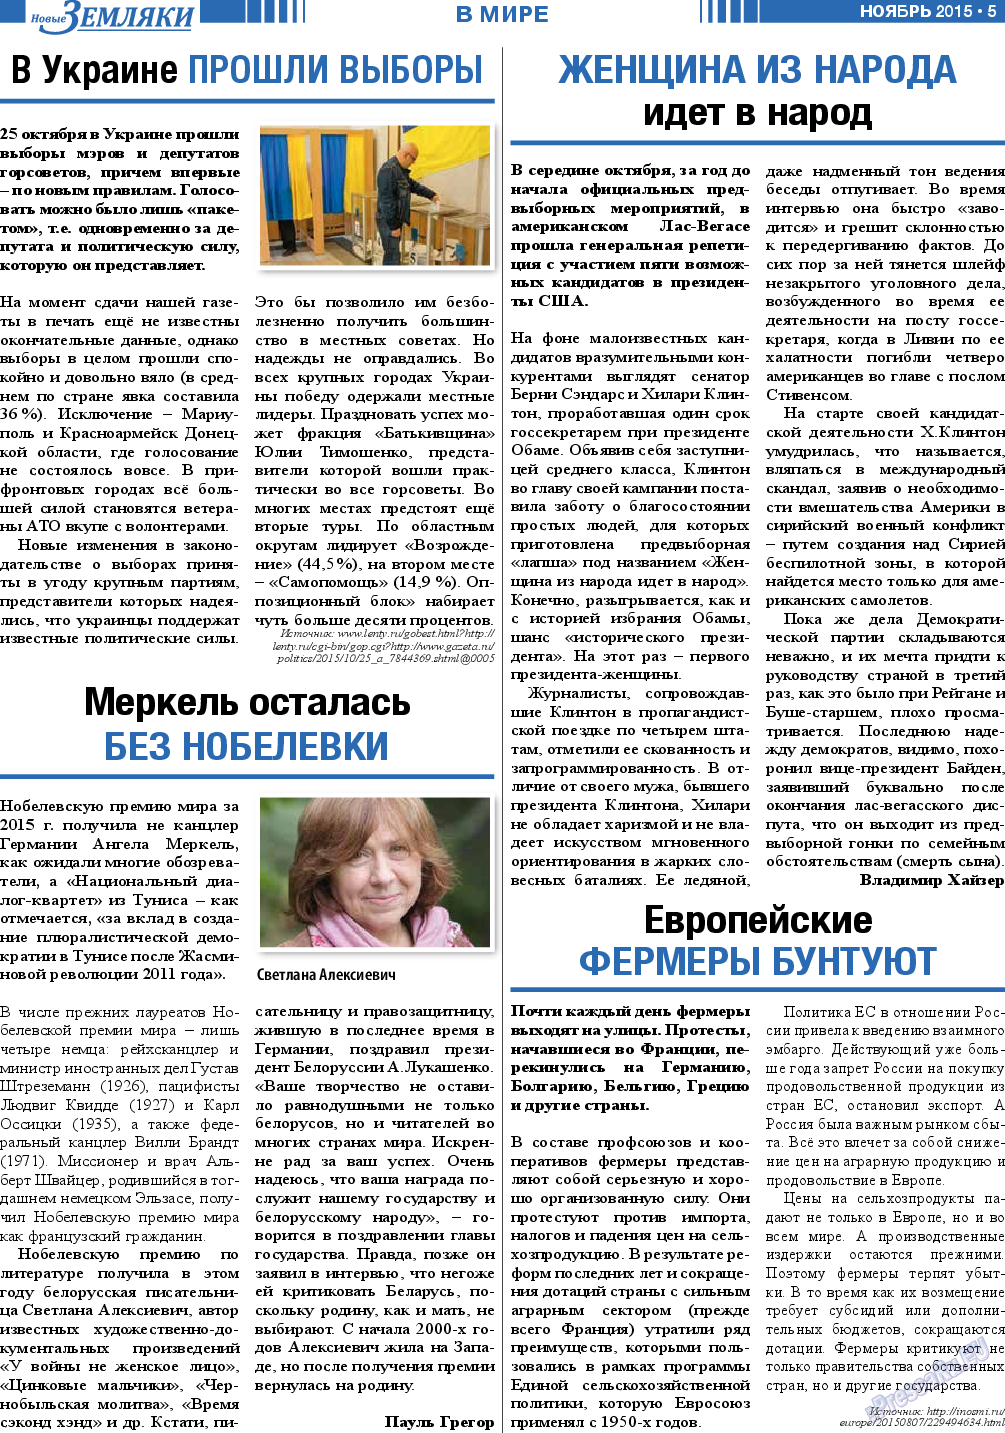 Новые Земляки, газета. 2015 №11 стр.5